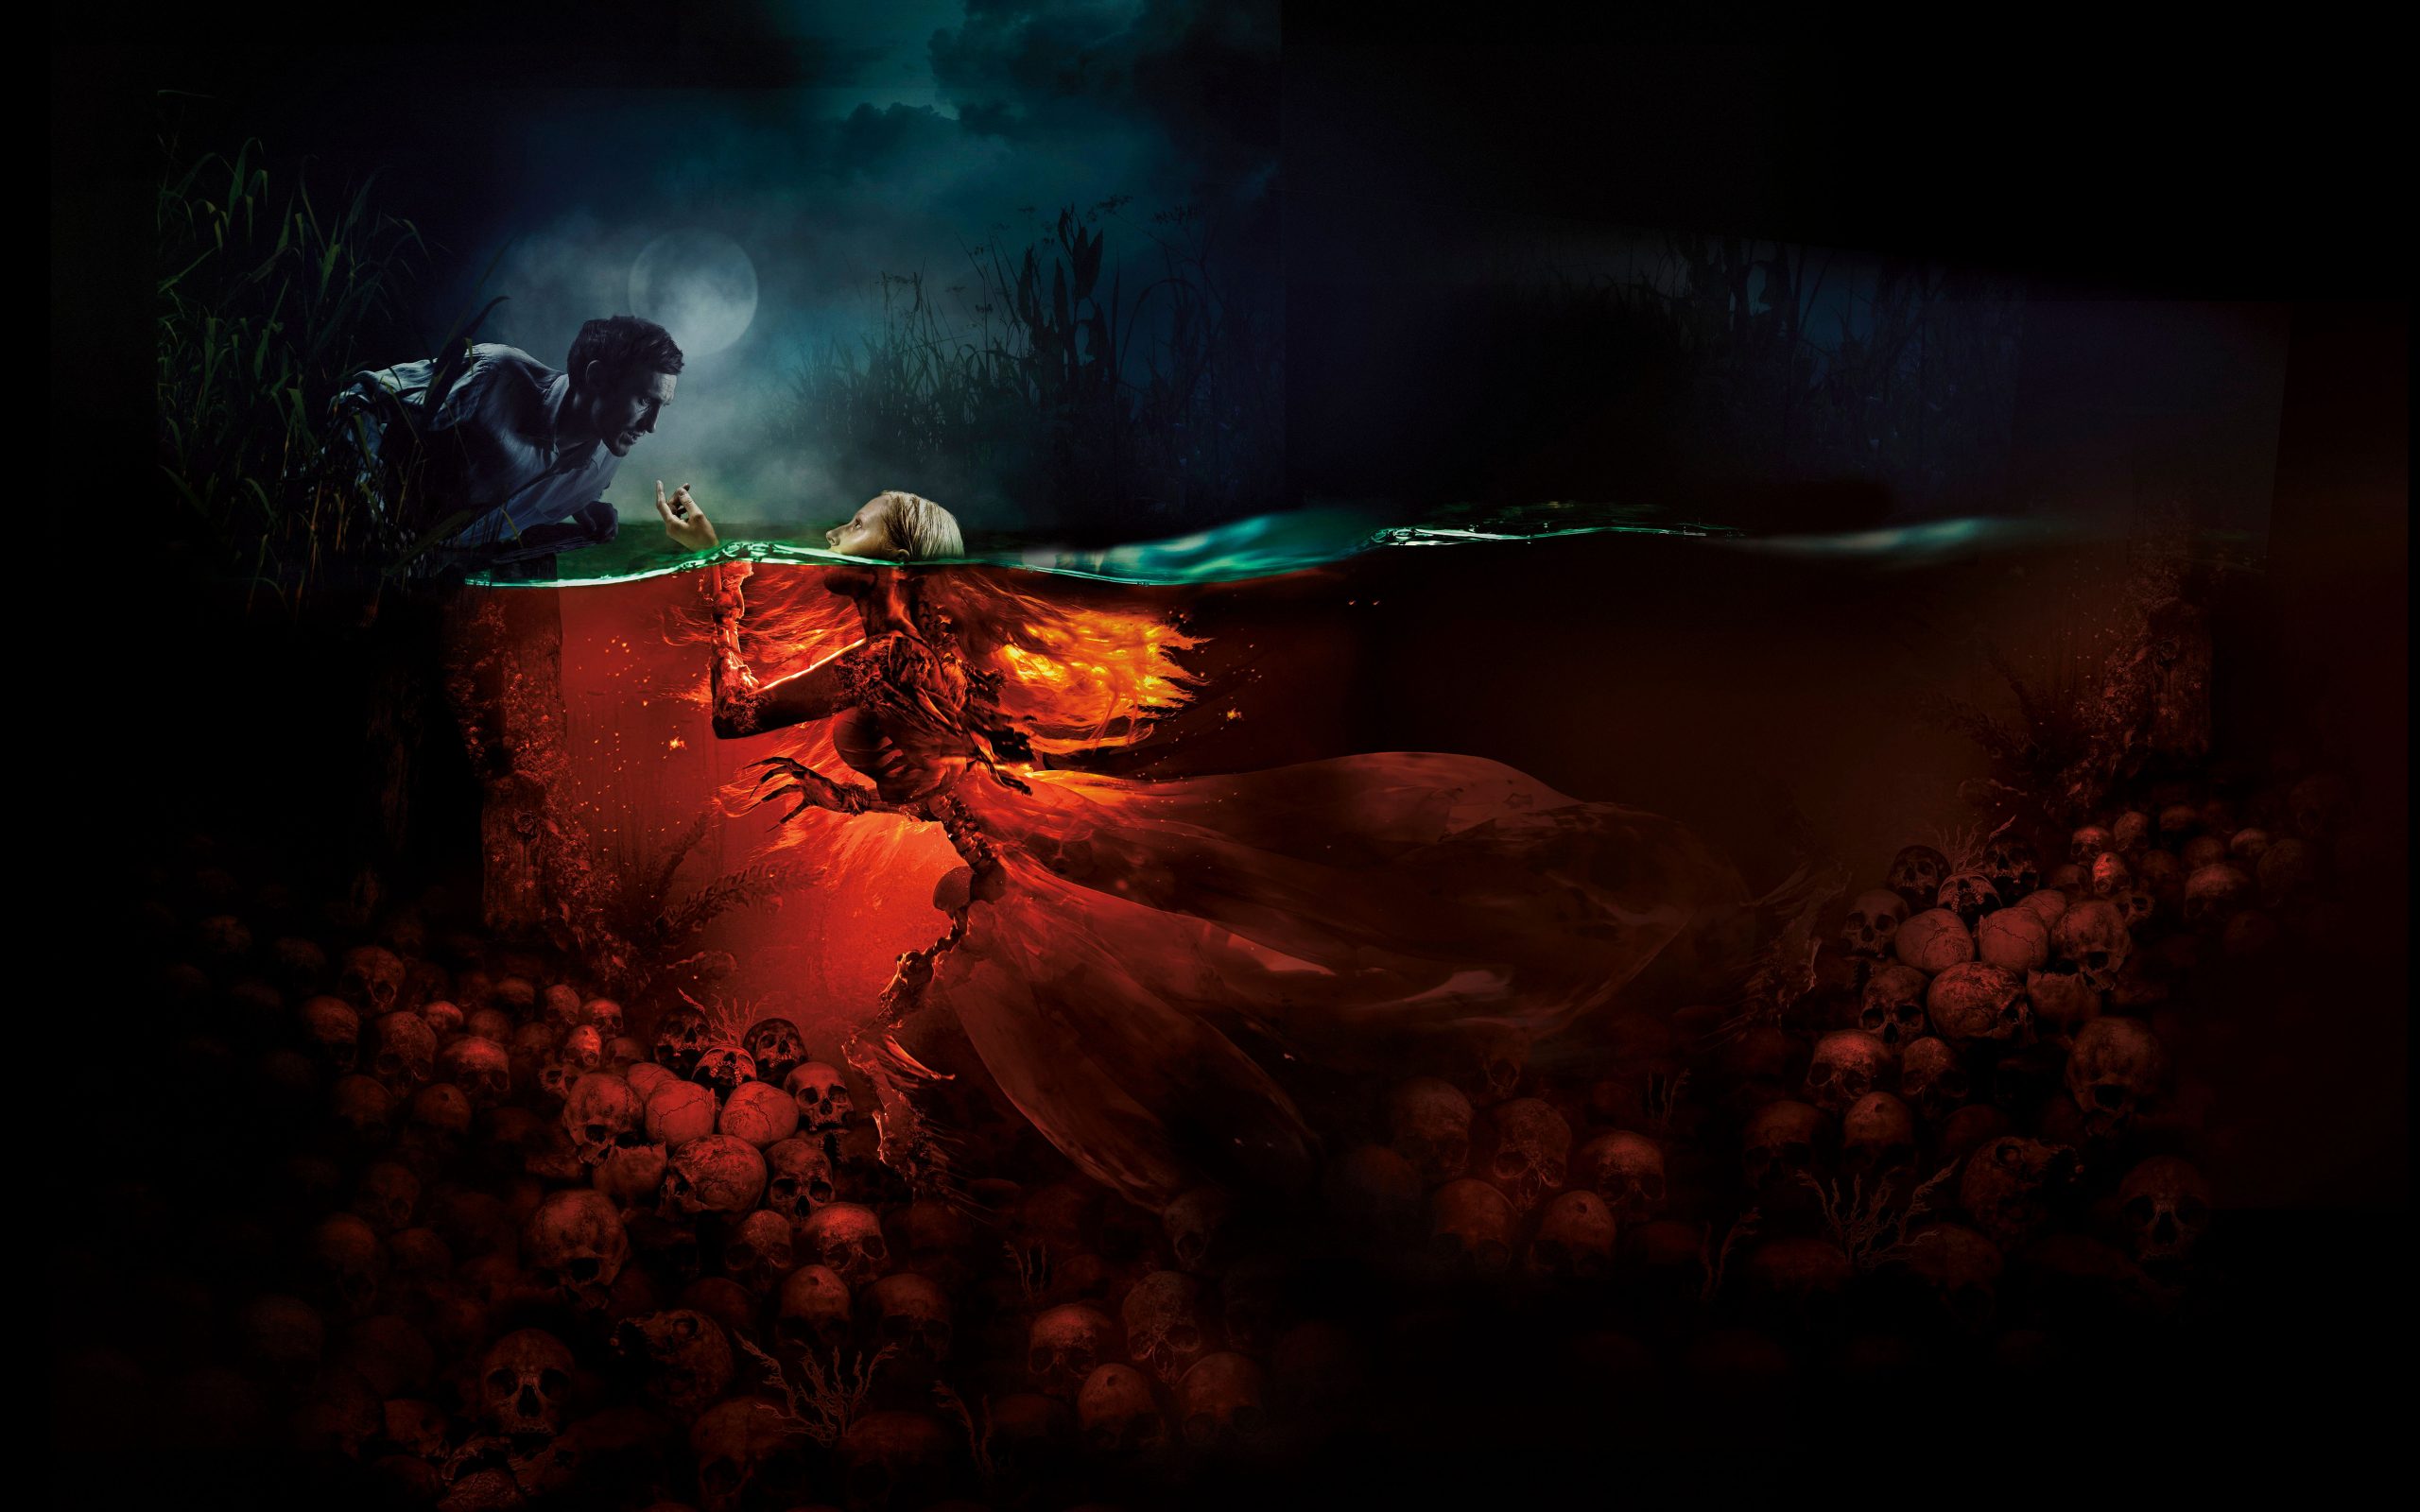 Wallpaper 4k, The Mermaid Lake Of The Dead, Horror